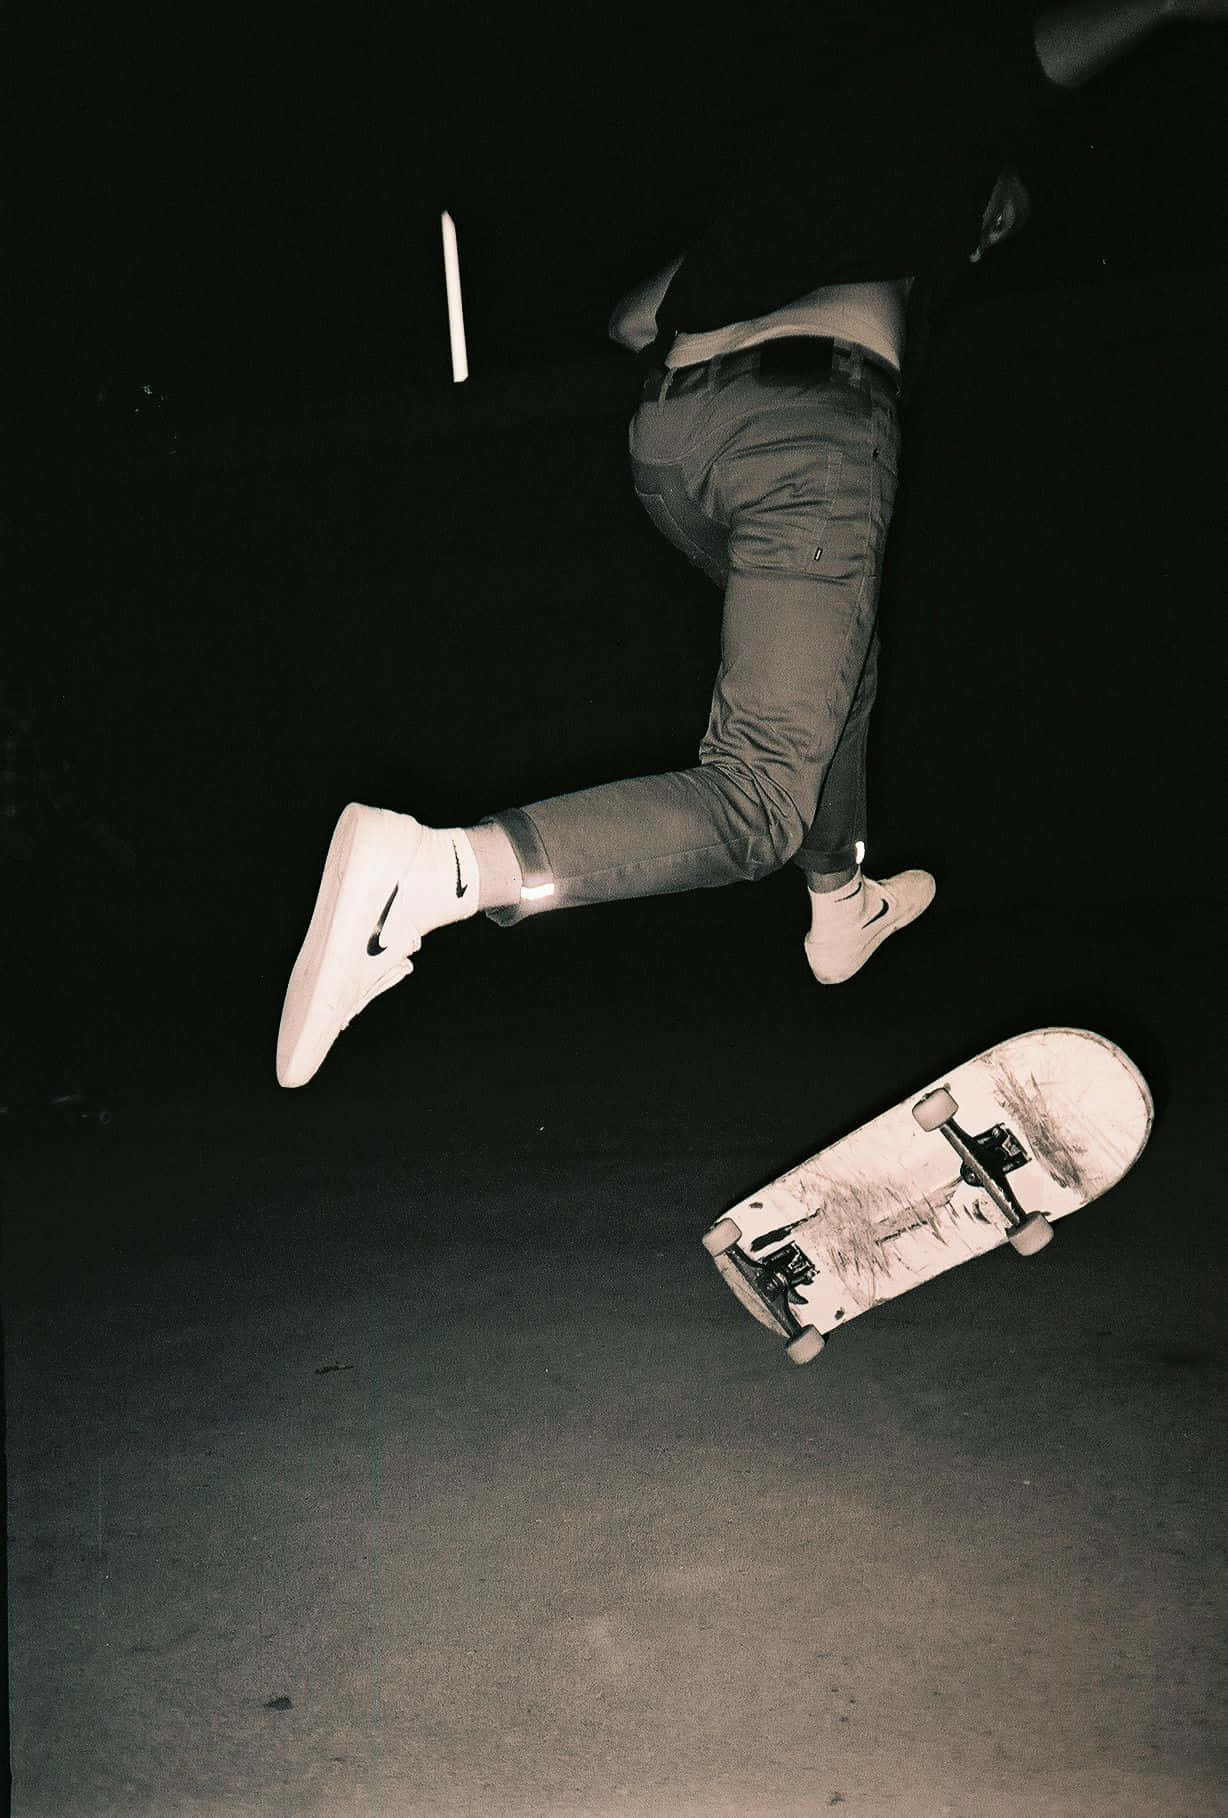 Enmand Udfører Et Trick På Et Skateboard.